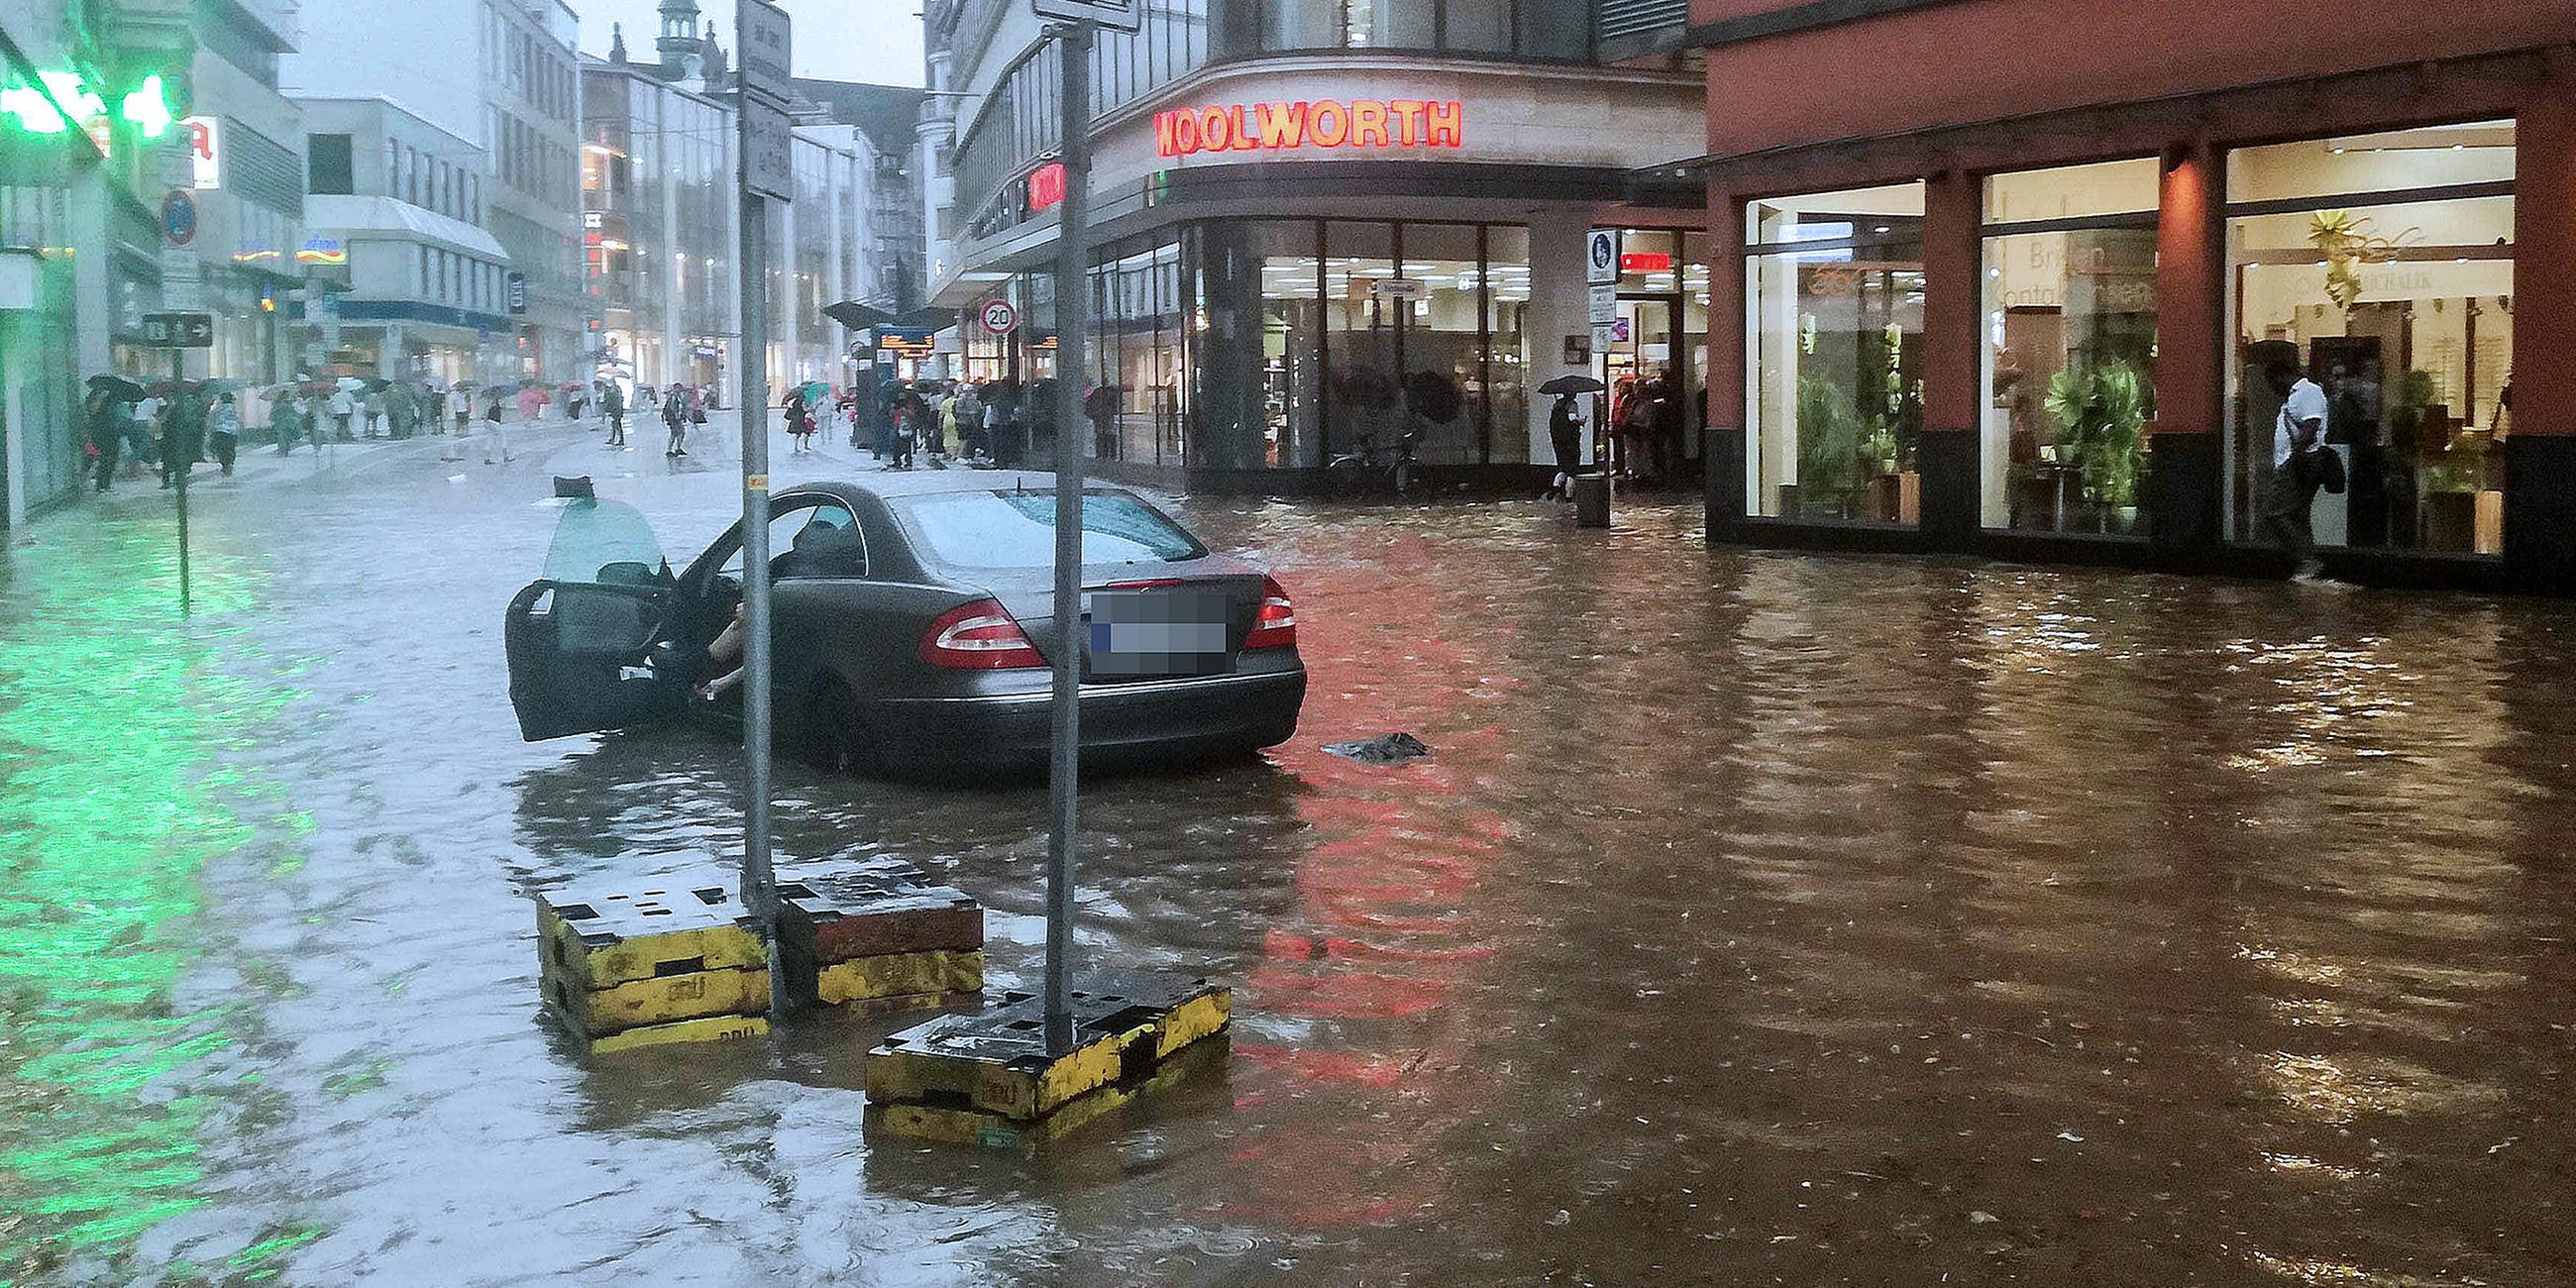 Eine Straße in Wuppertal ist nach heftigem Regen überflutet.